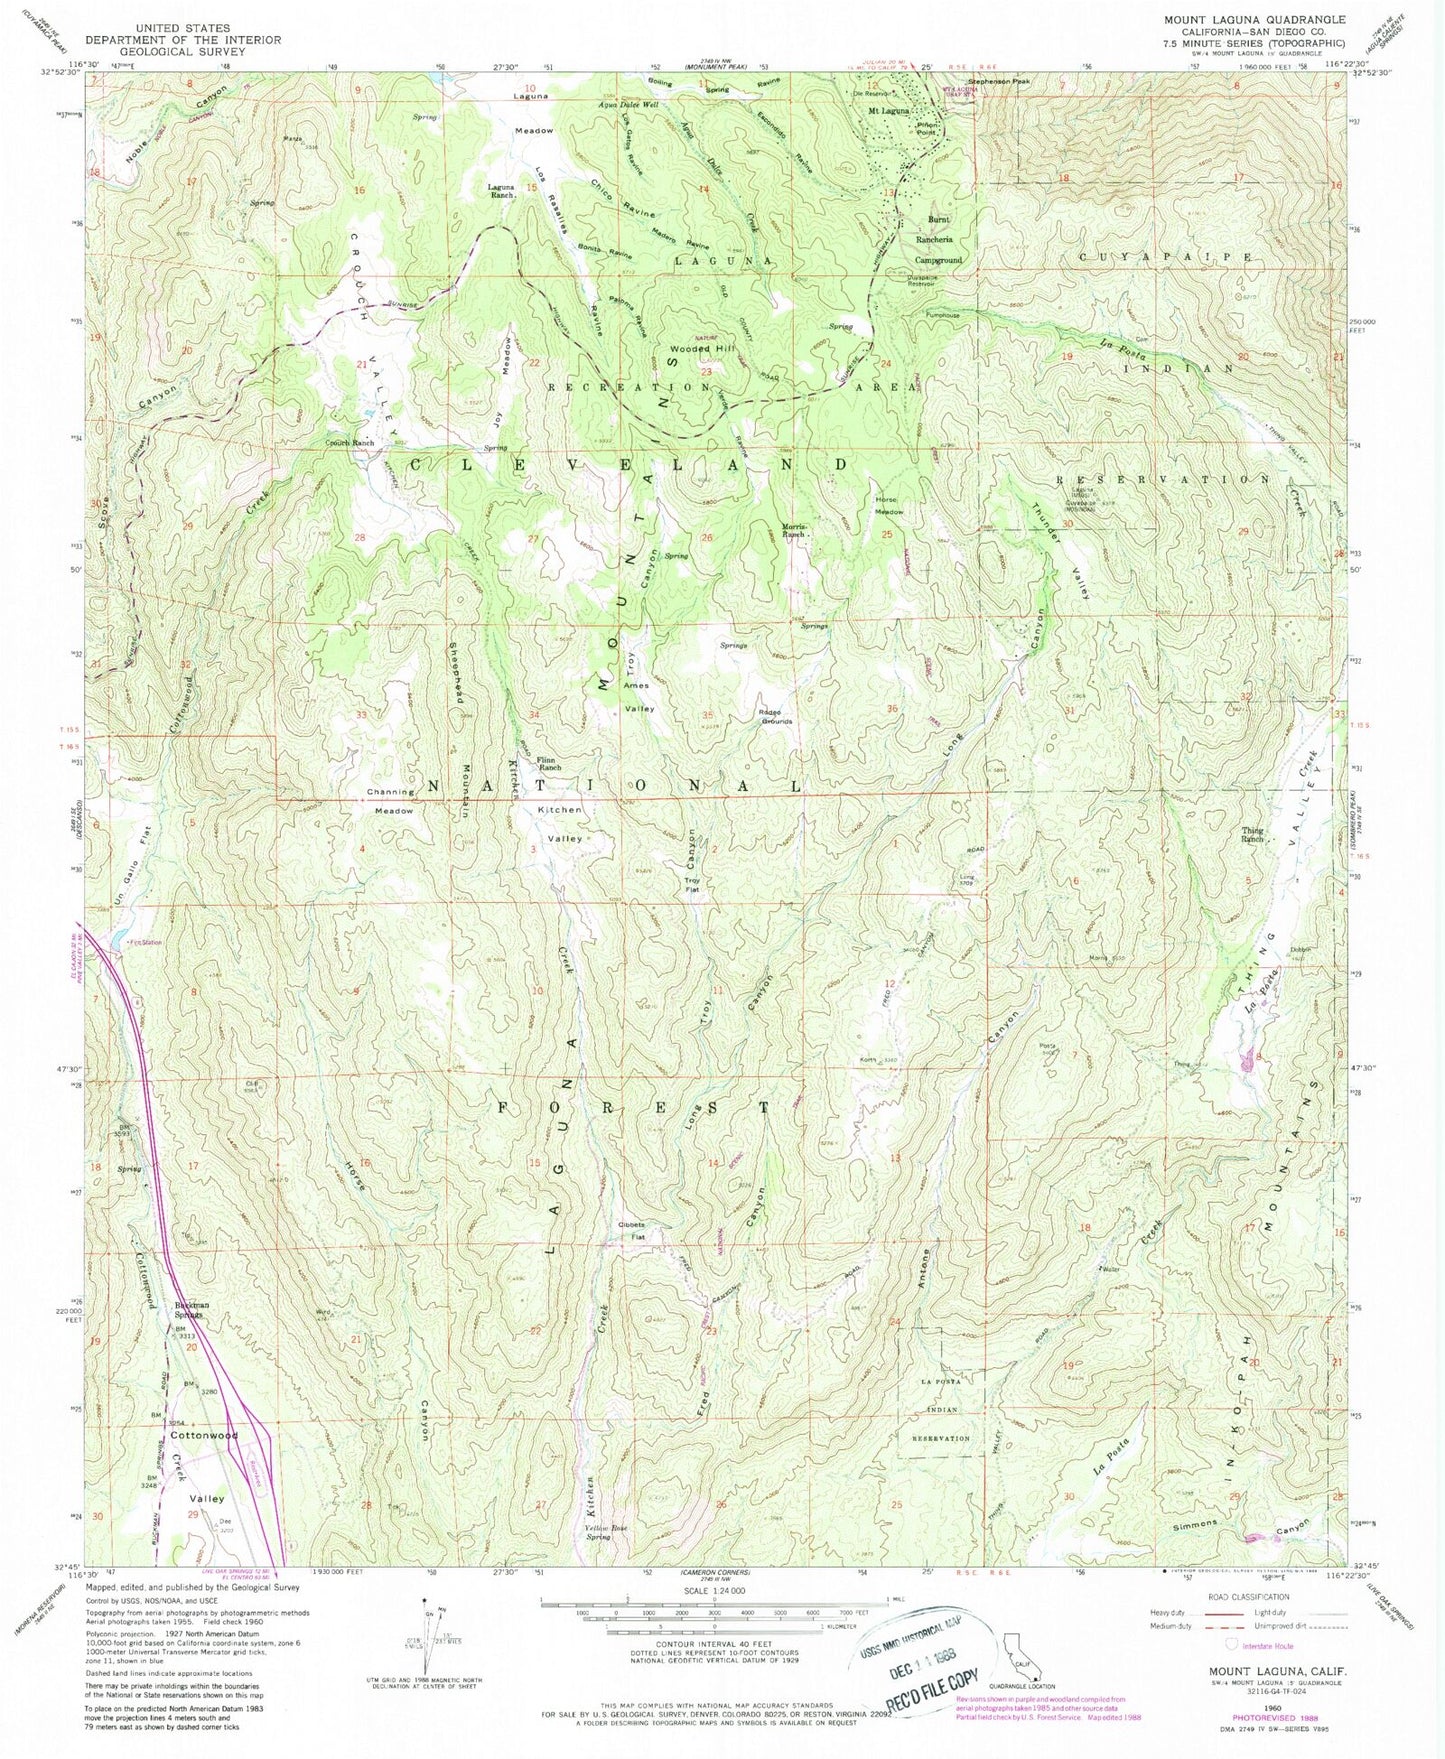 USGS Classic Mount Laguna California 7.5'x7.5' Topo Map Image